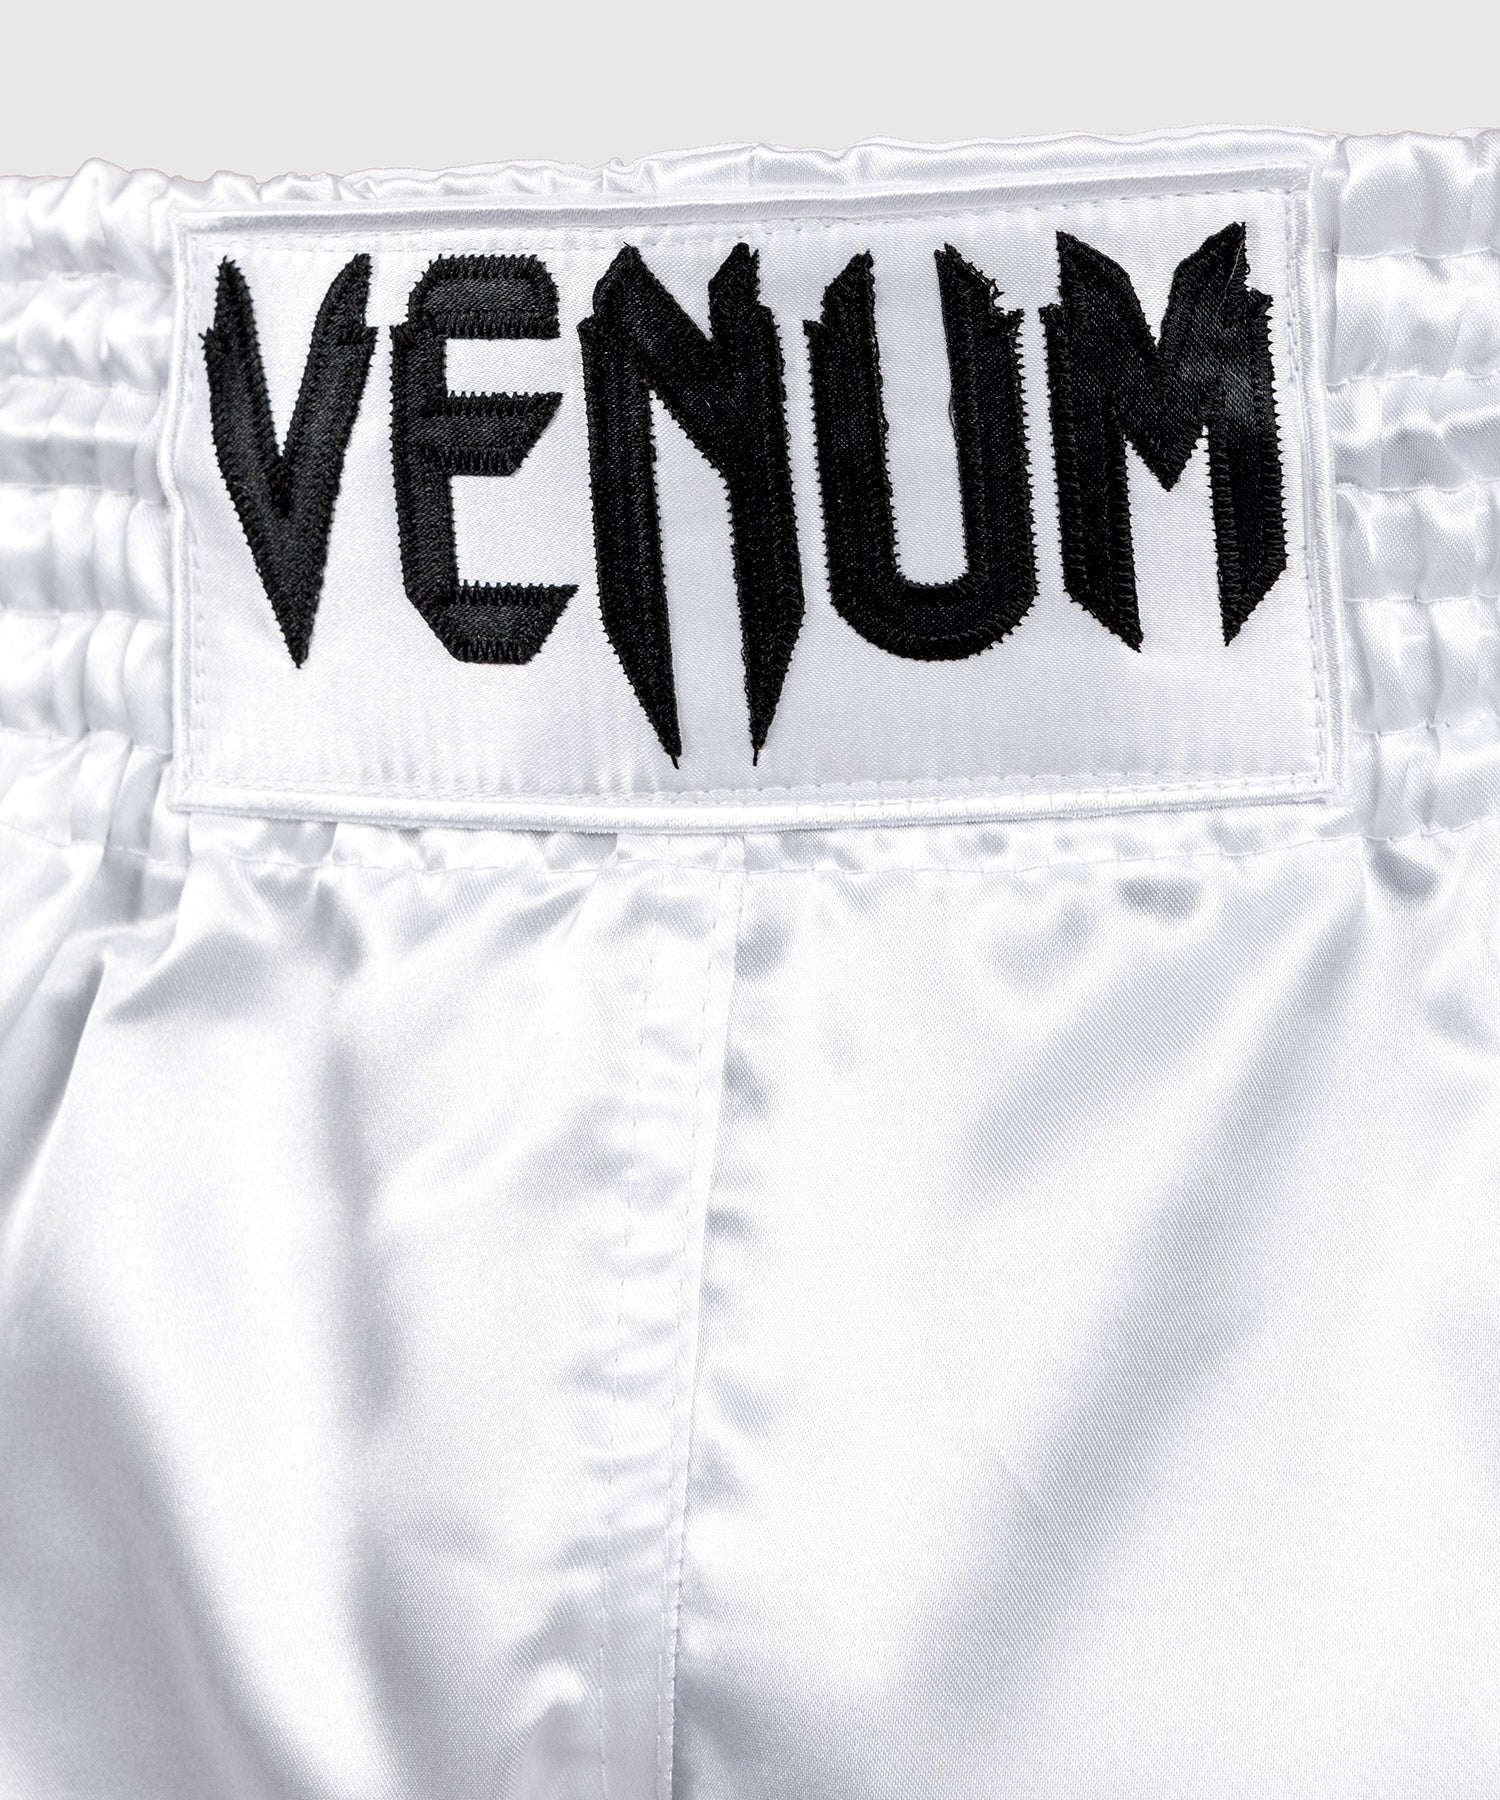 Short Muay Thai Femme Venum White Snake - Blanc – Venum France